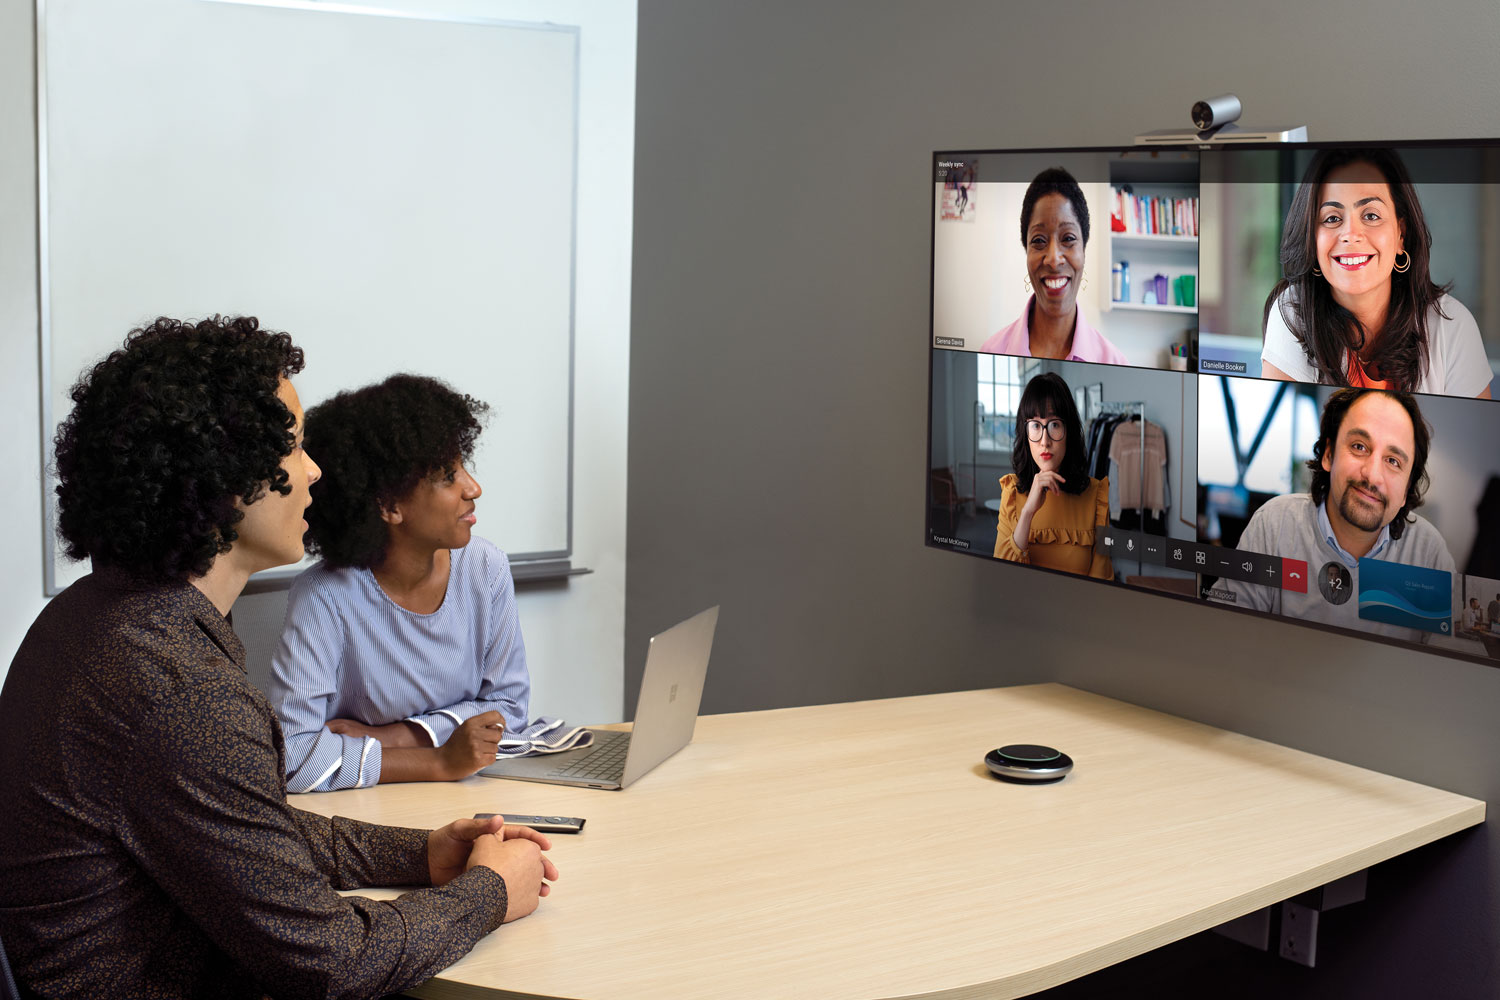 Zwei Menschen sitzen in einem kleinen Konferenzraum, sie blicken auf einen Bildschirm an der Wand, auf dem vier Teilnehmer*innen der Teams-Besprechung zu sehen sind.